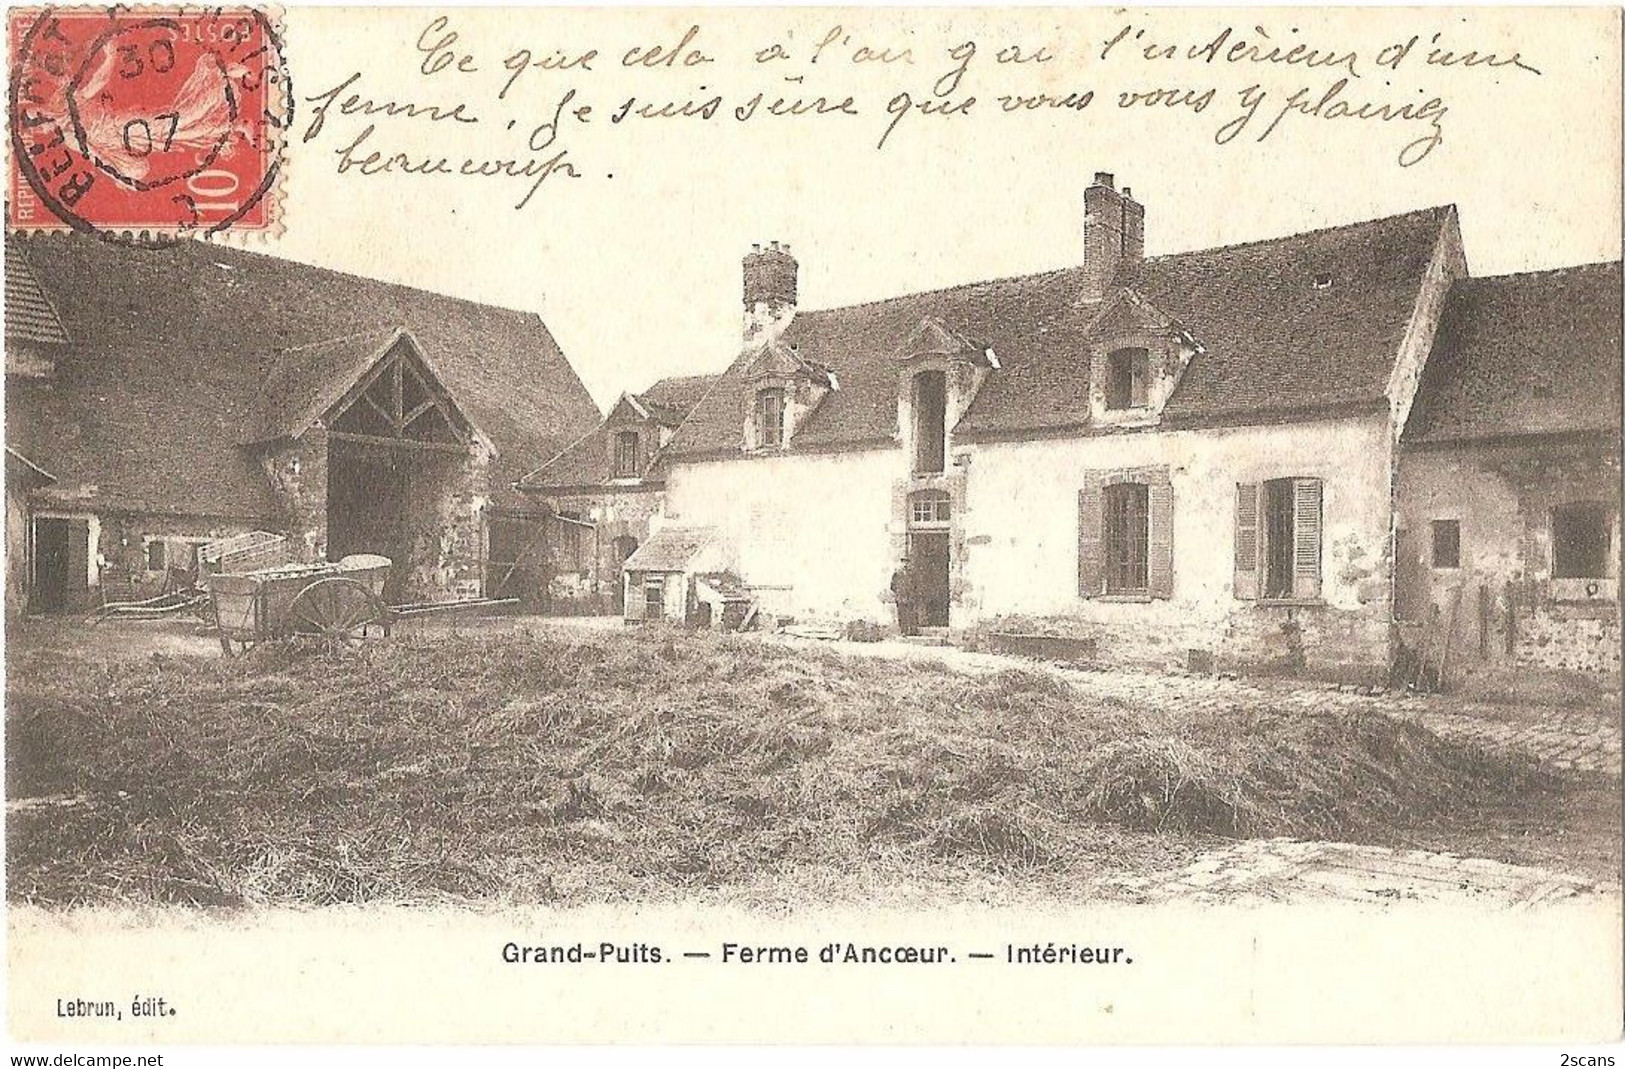 77 - GRANDPUITS-BAILLY-CARROIS - Grand-Puits - Ferme D'Ancoeur - Intérieur - (Lebrun, édit. - Simi-Bromure A. Breger) - Baillycarrois